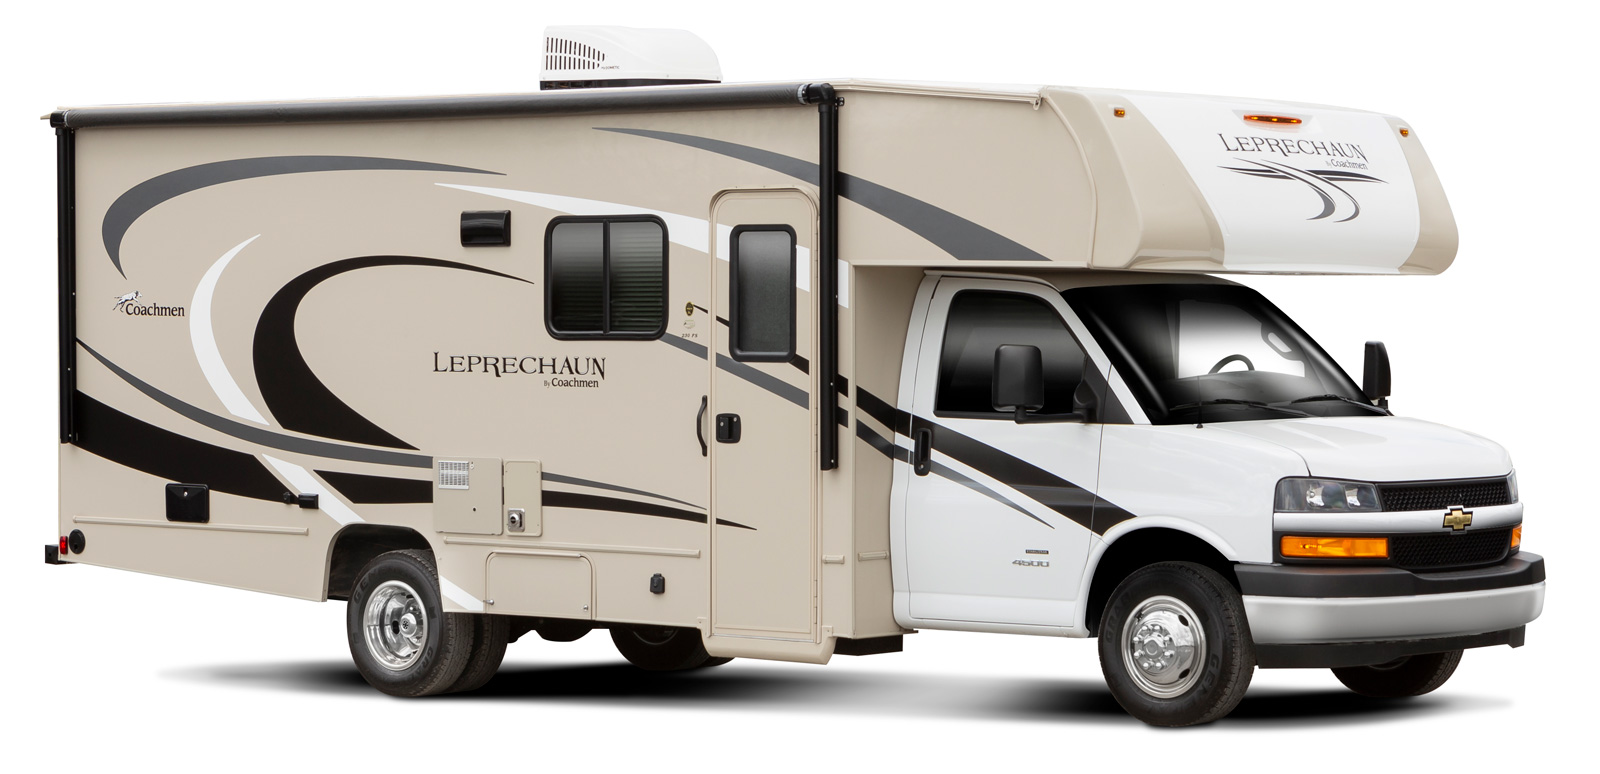 leprechaun travel trailer